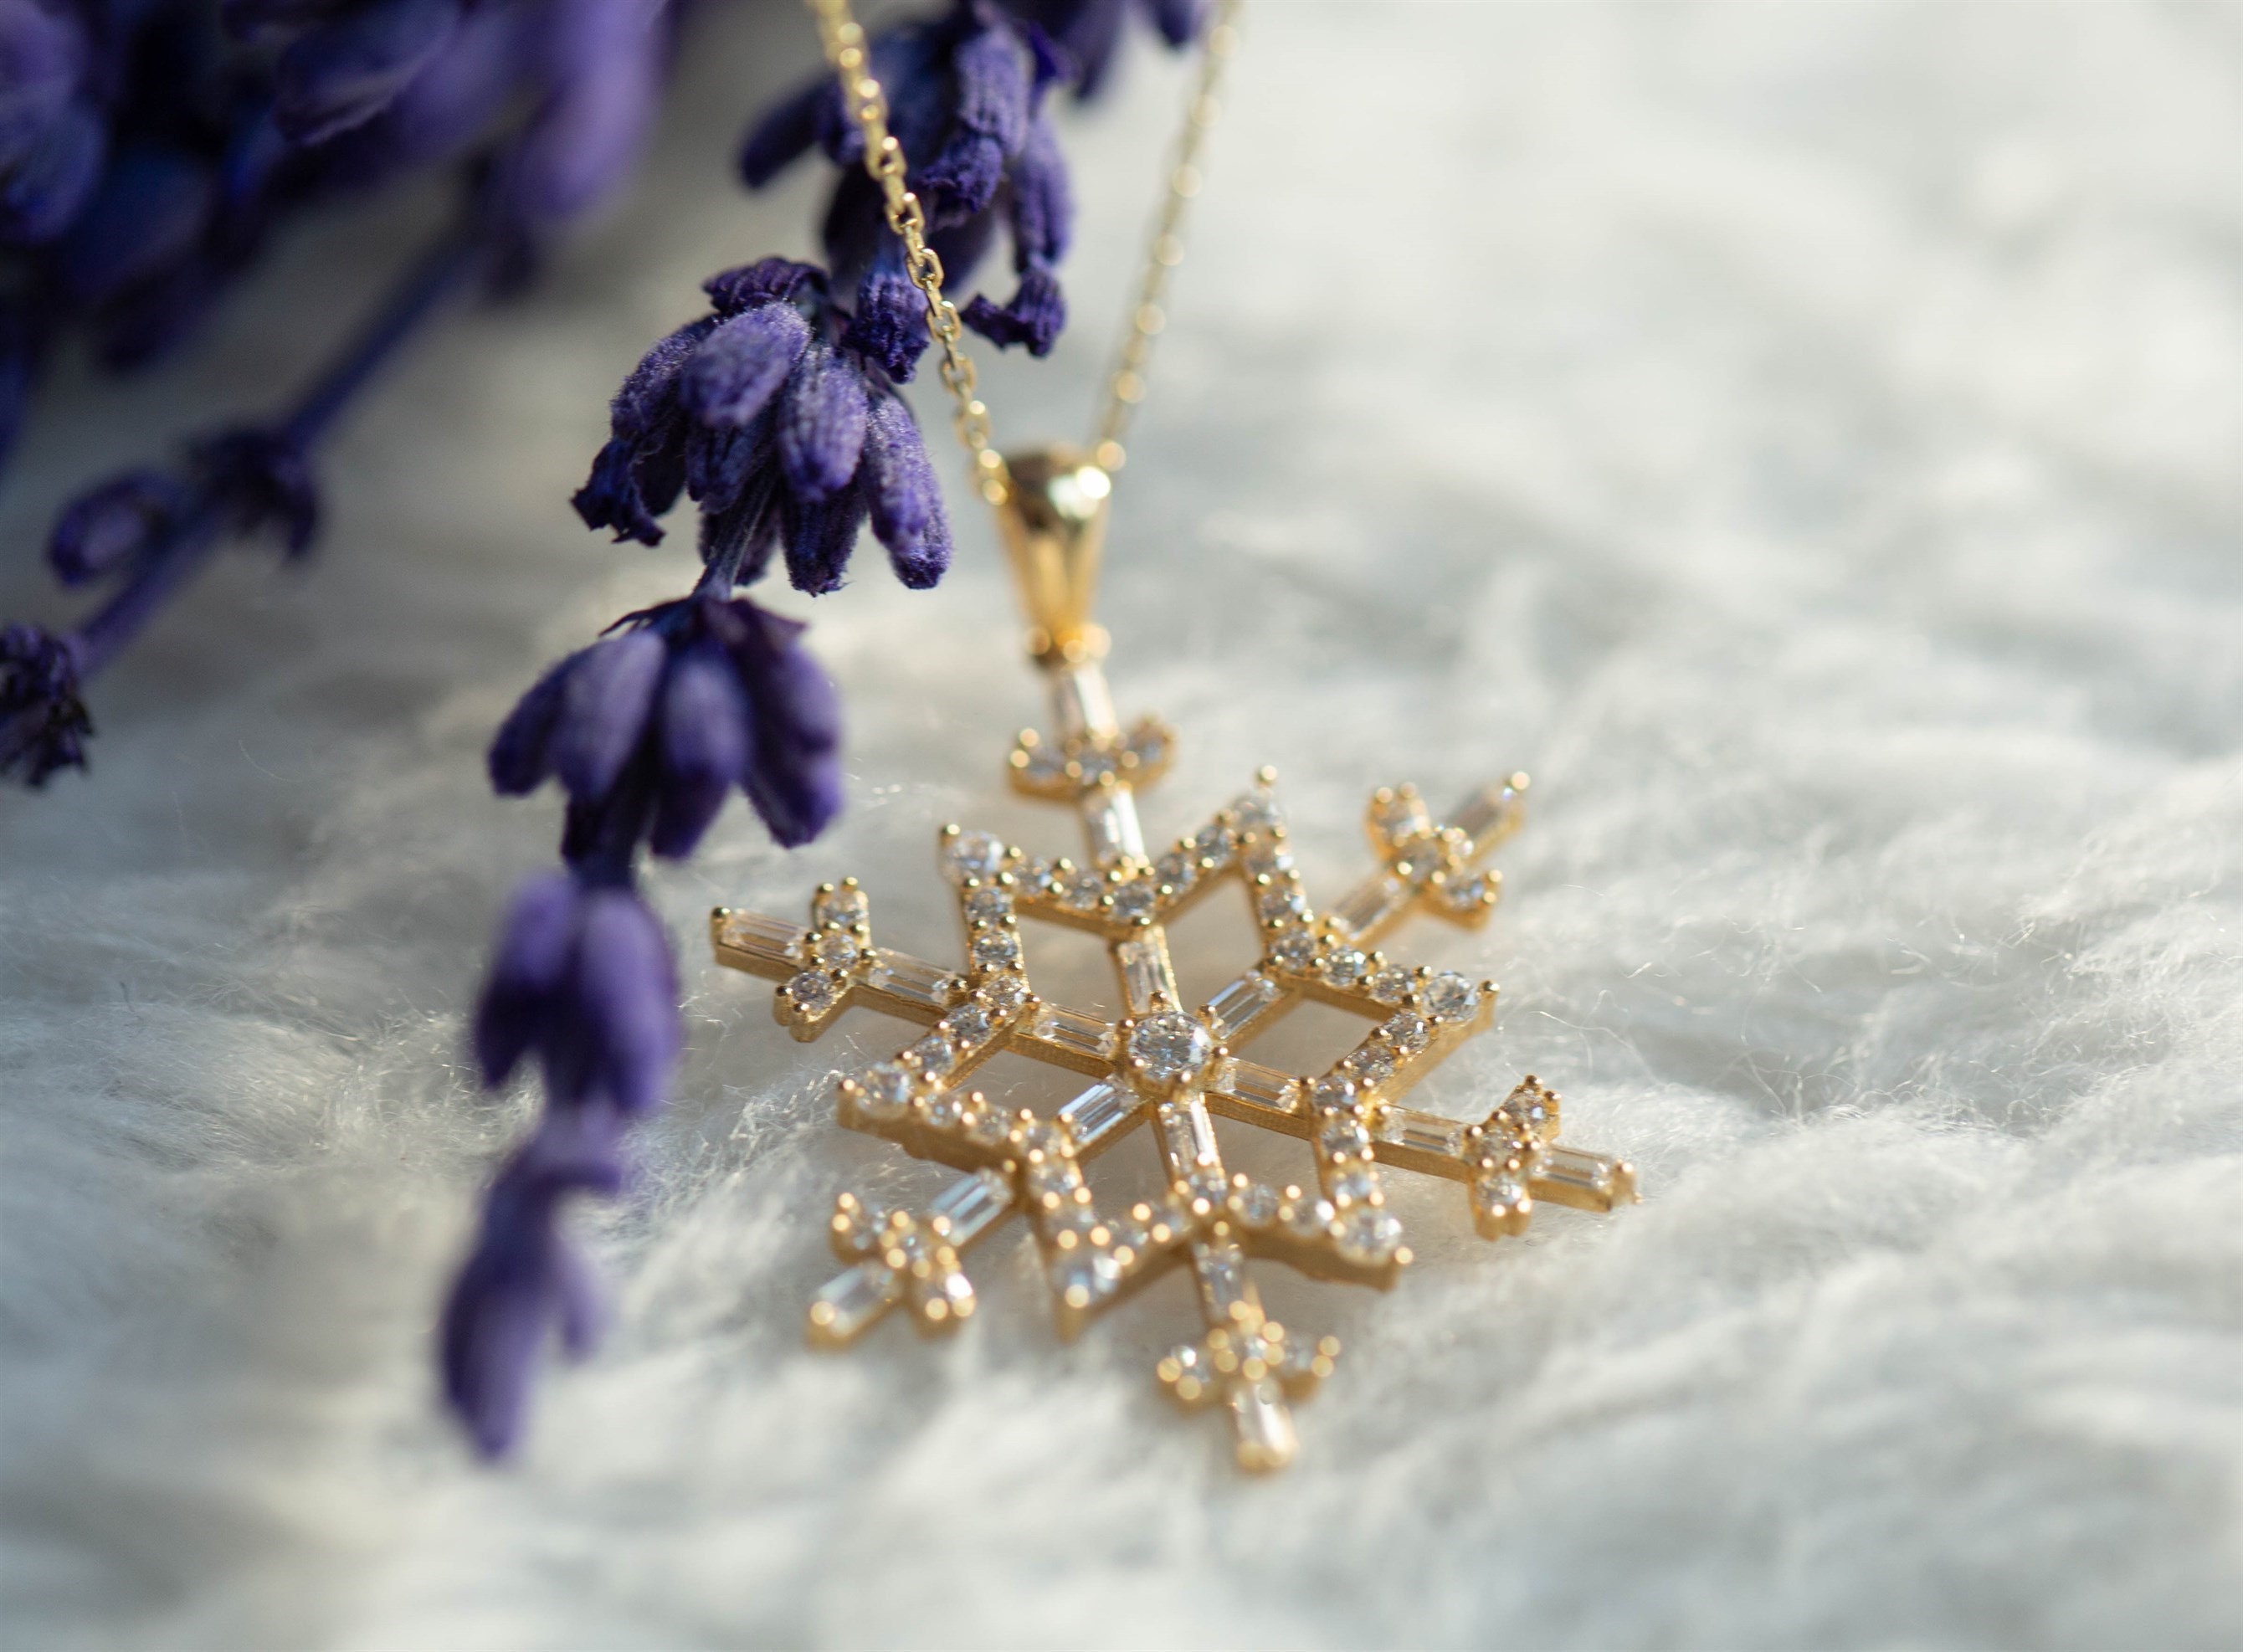 Diamond Snowflake Necklace with Lab Grown Diamonds – TOR